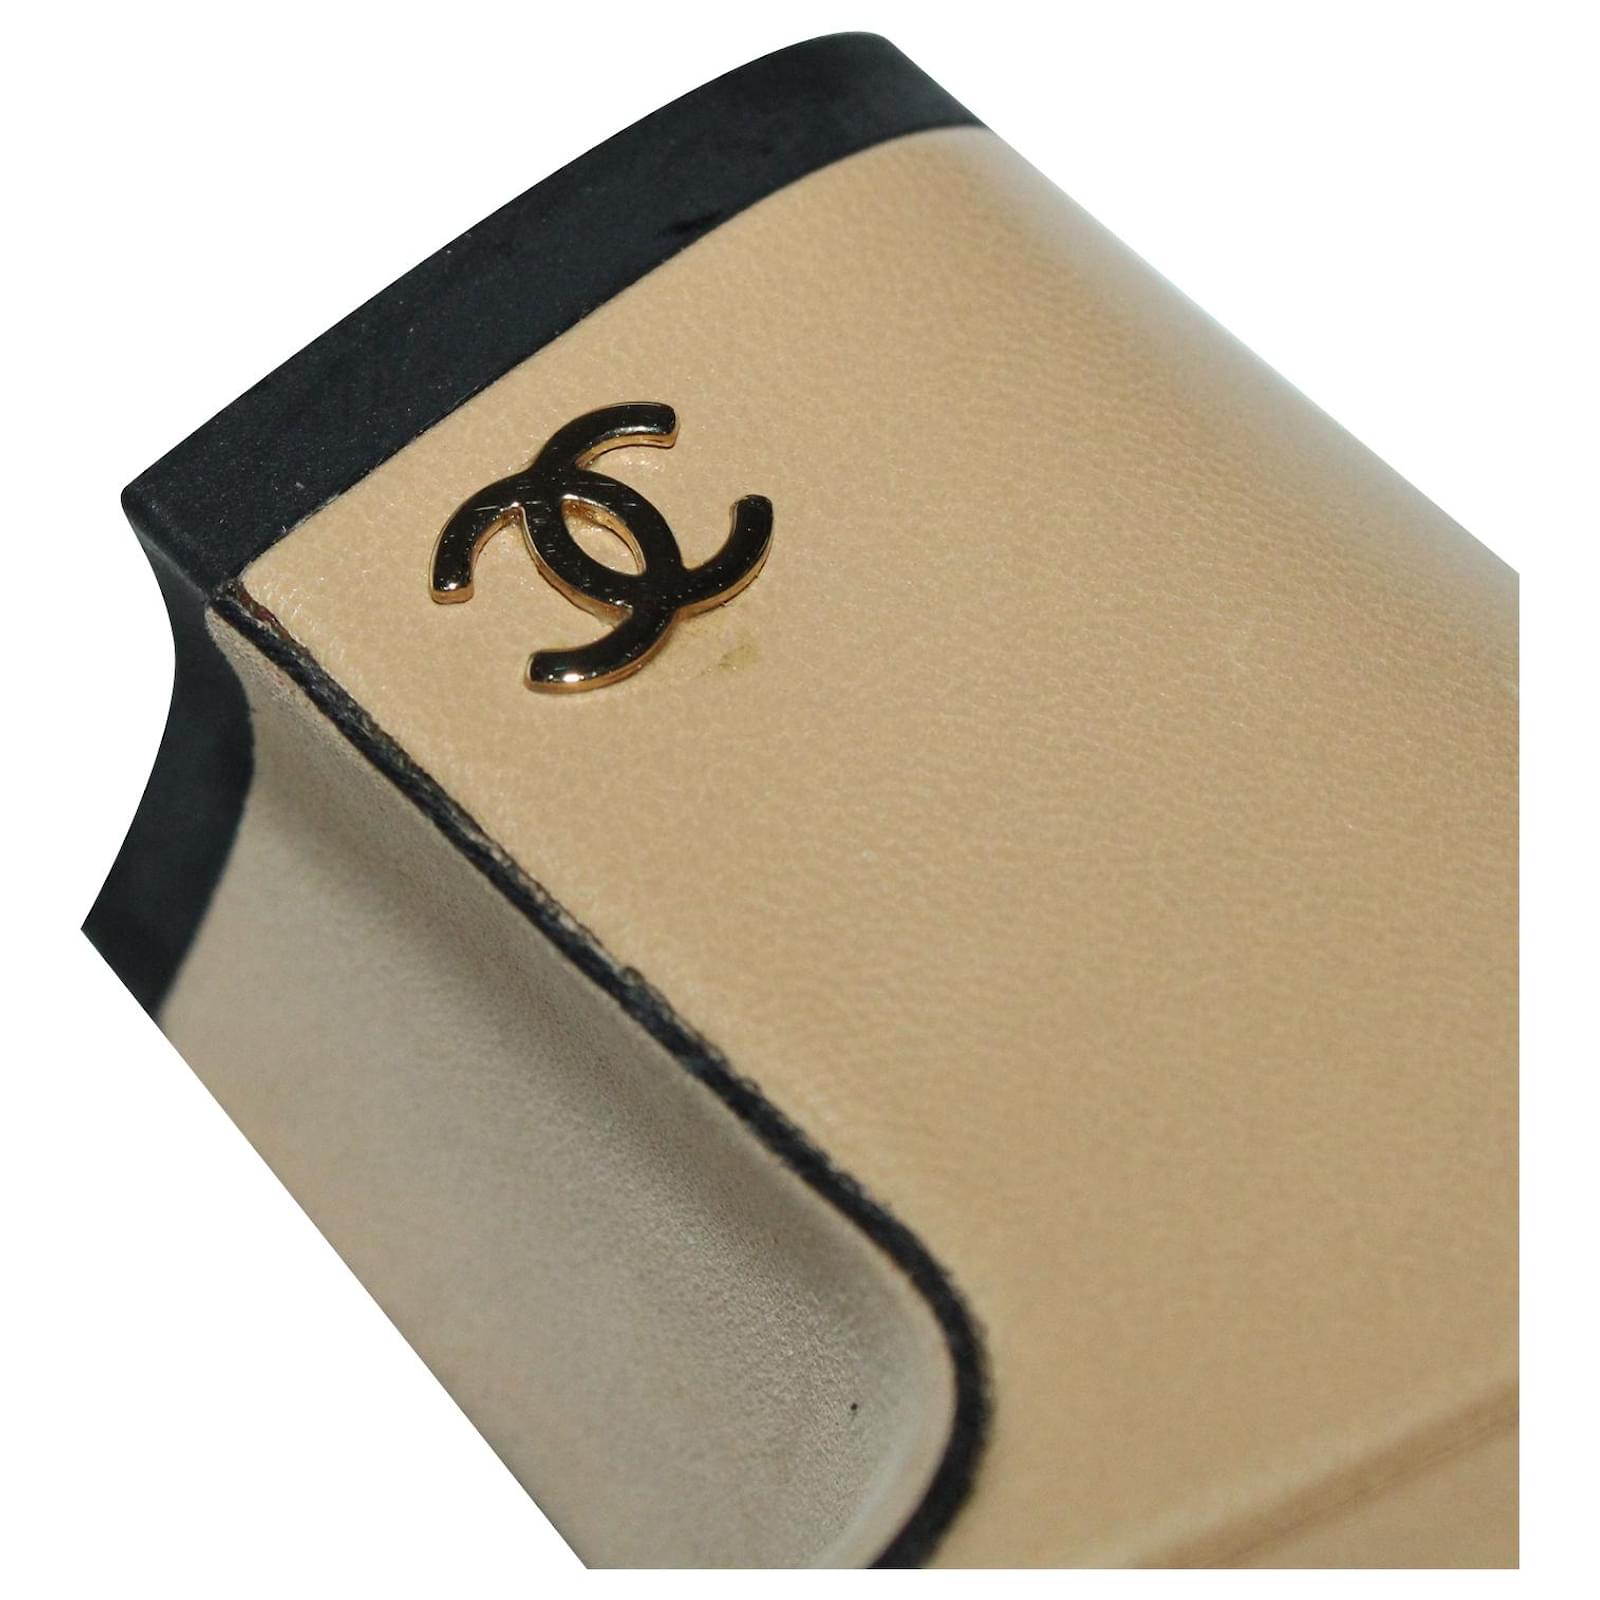 Heels Chanel Chanel Slingback Pumps in Beige Goatskin Leather Size 35.5 EU